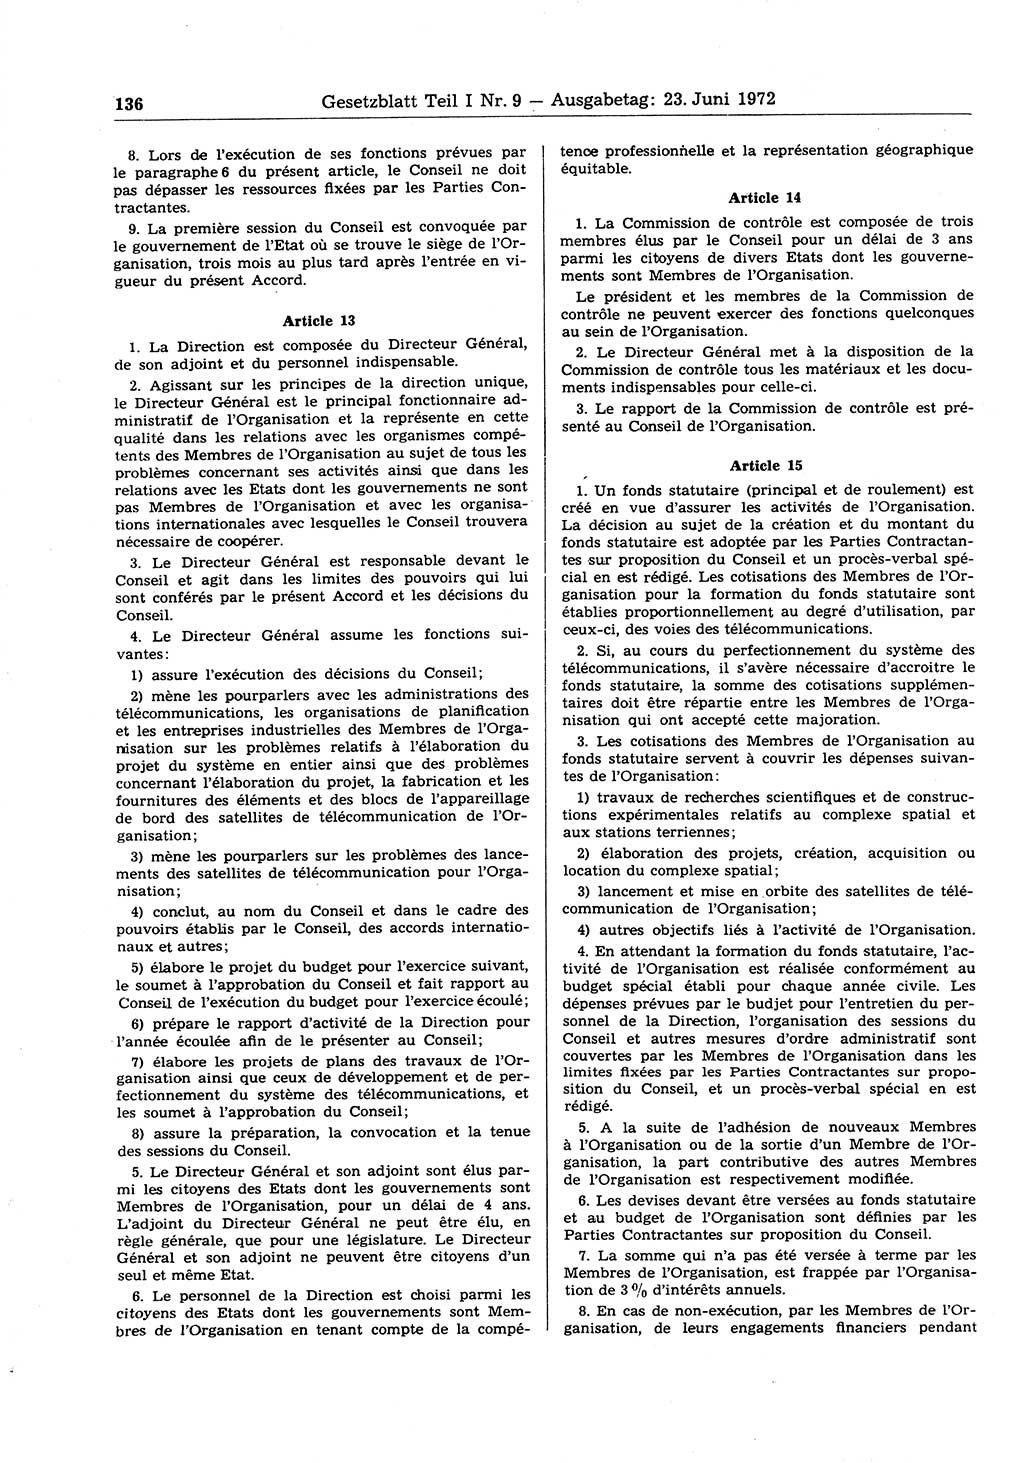 Gesetzblatt (GBl.) der Deutschen Demokratischen Republik (DDR) Teil Ⅰ 1972, Seite 136 (GBl. DDR Ⅰ 1972, S. 136)